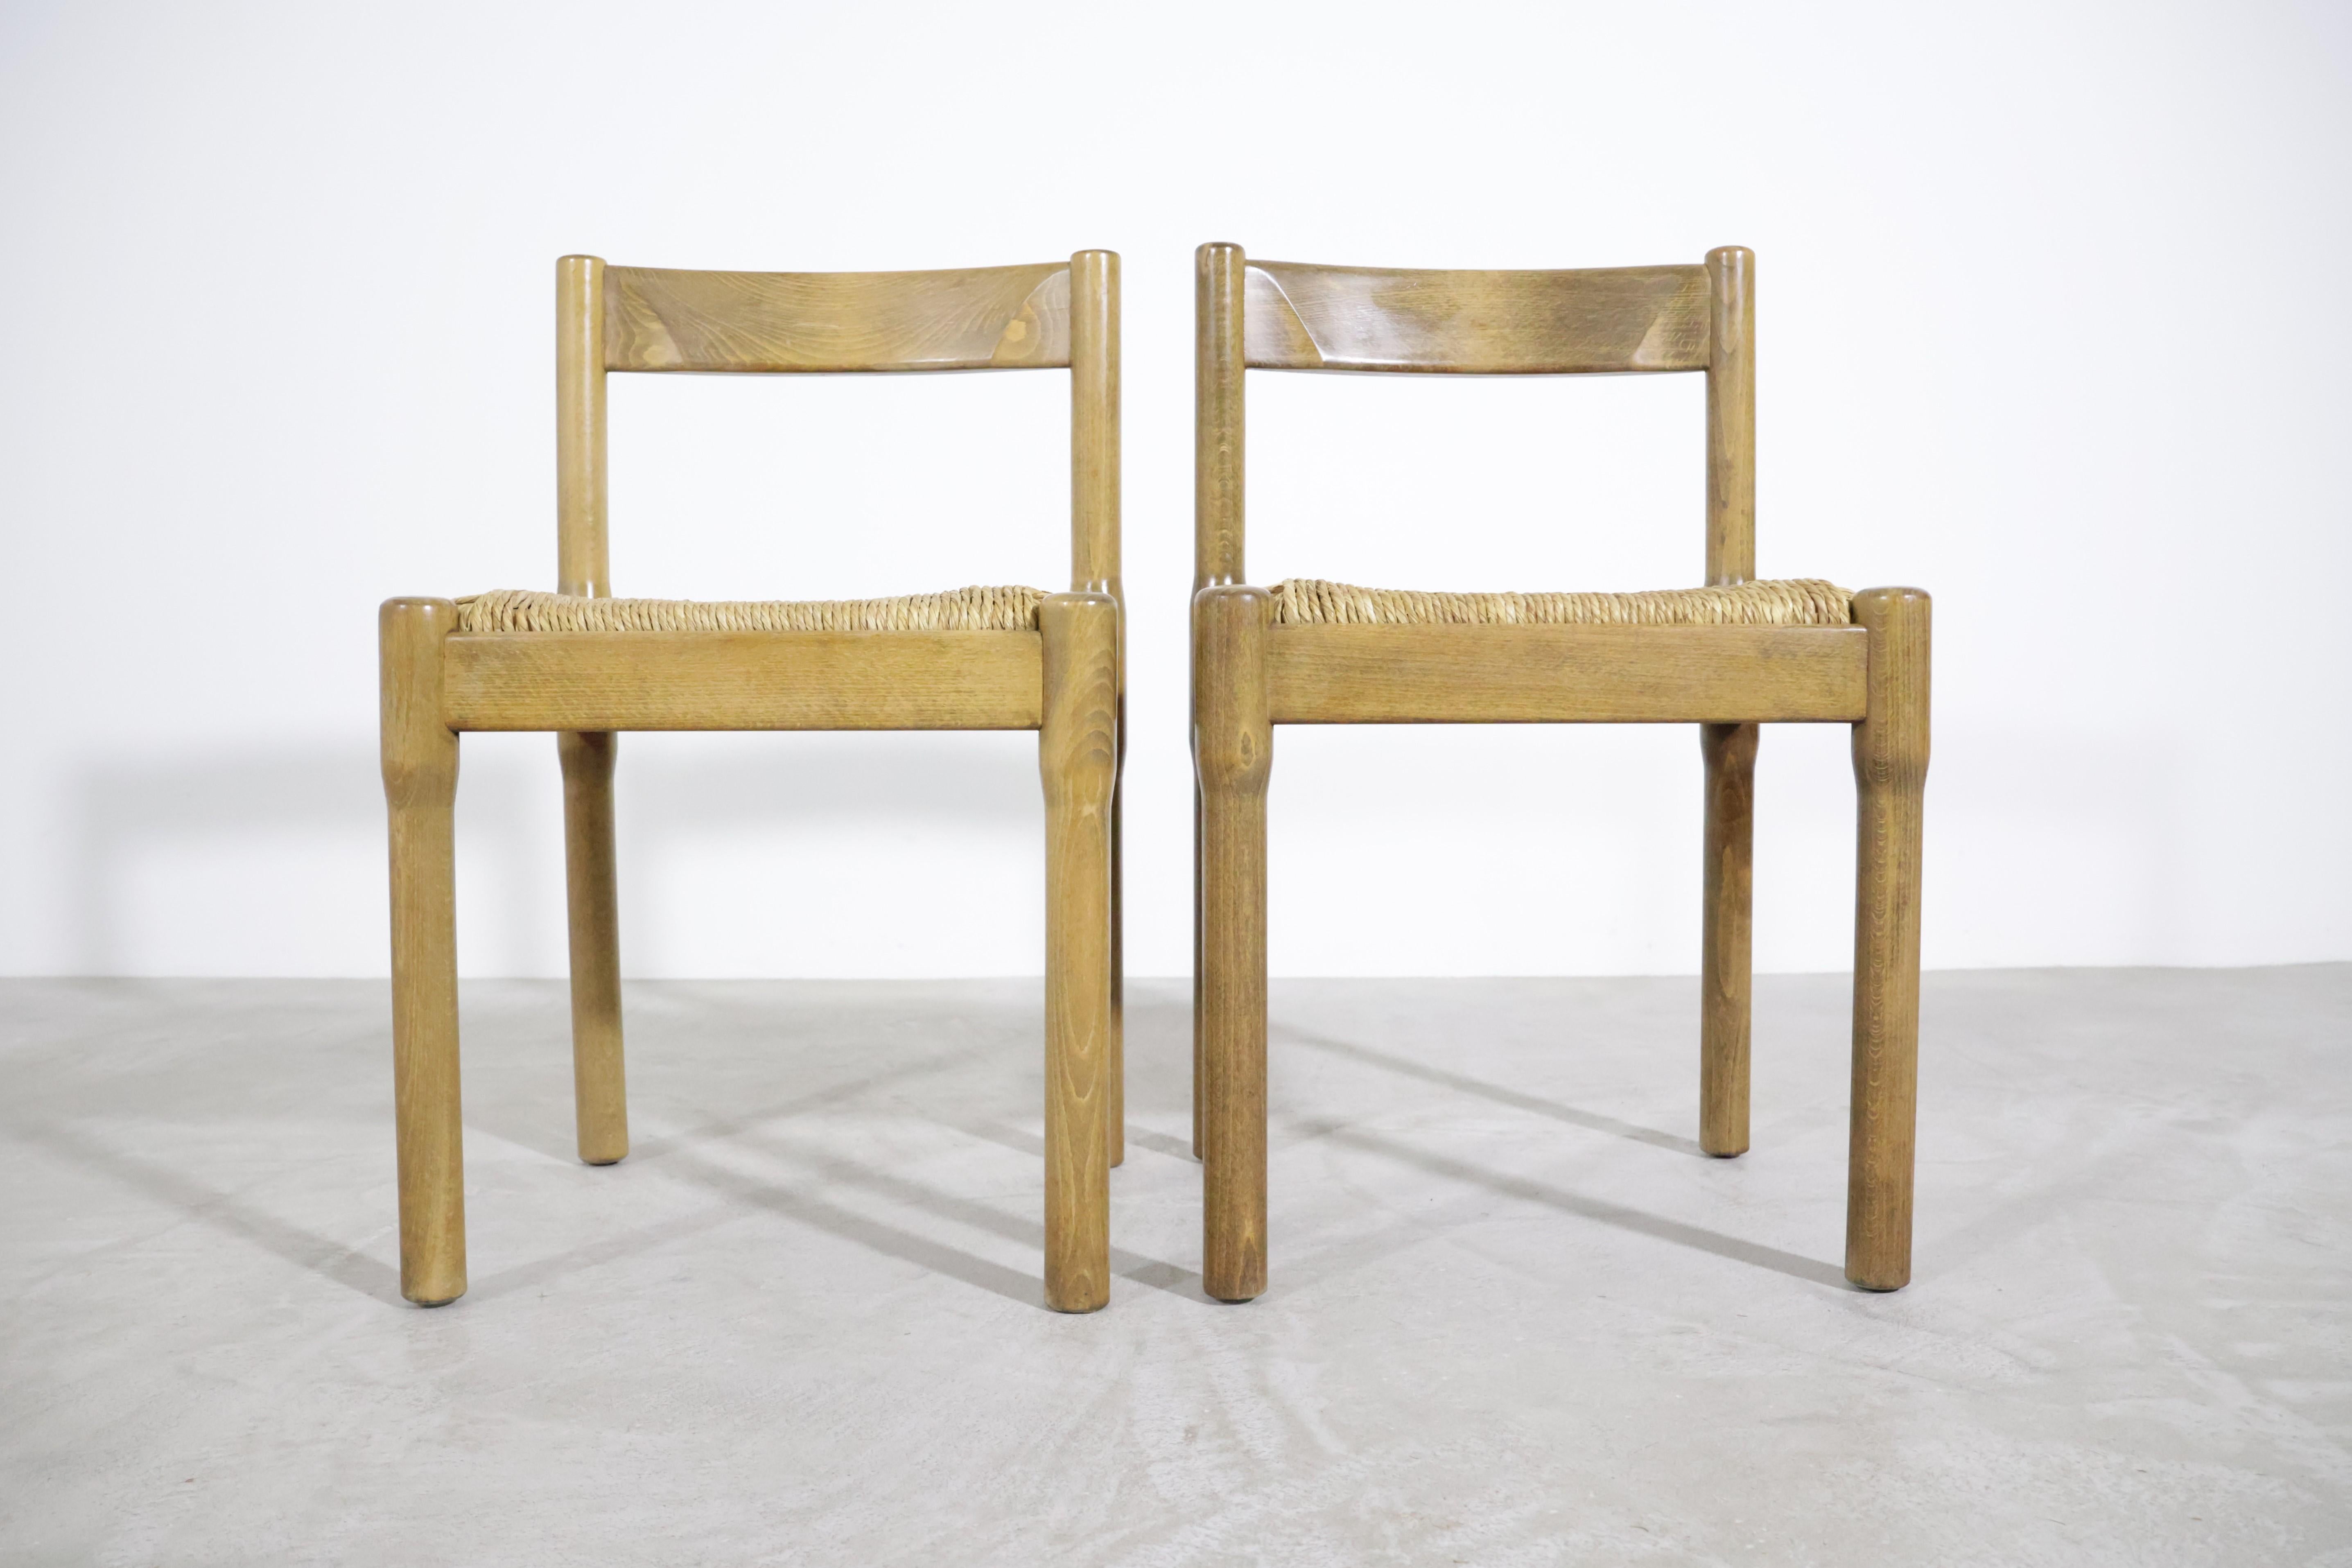 Magnifique ensemble de deux chaises de salle à manger 'Carimate' par Vico Magistretti pour Mario Luigi Comi/Italie dans les années 60 !
La chaise 